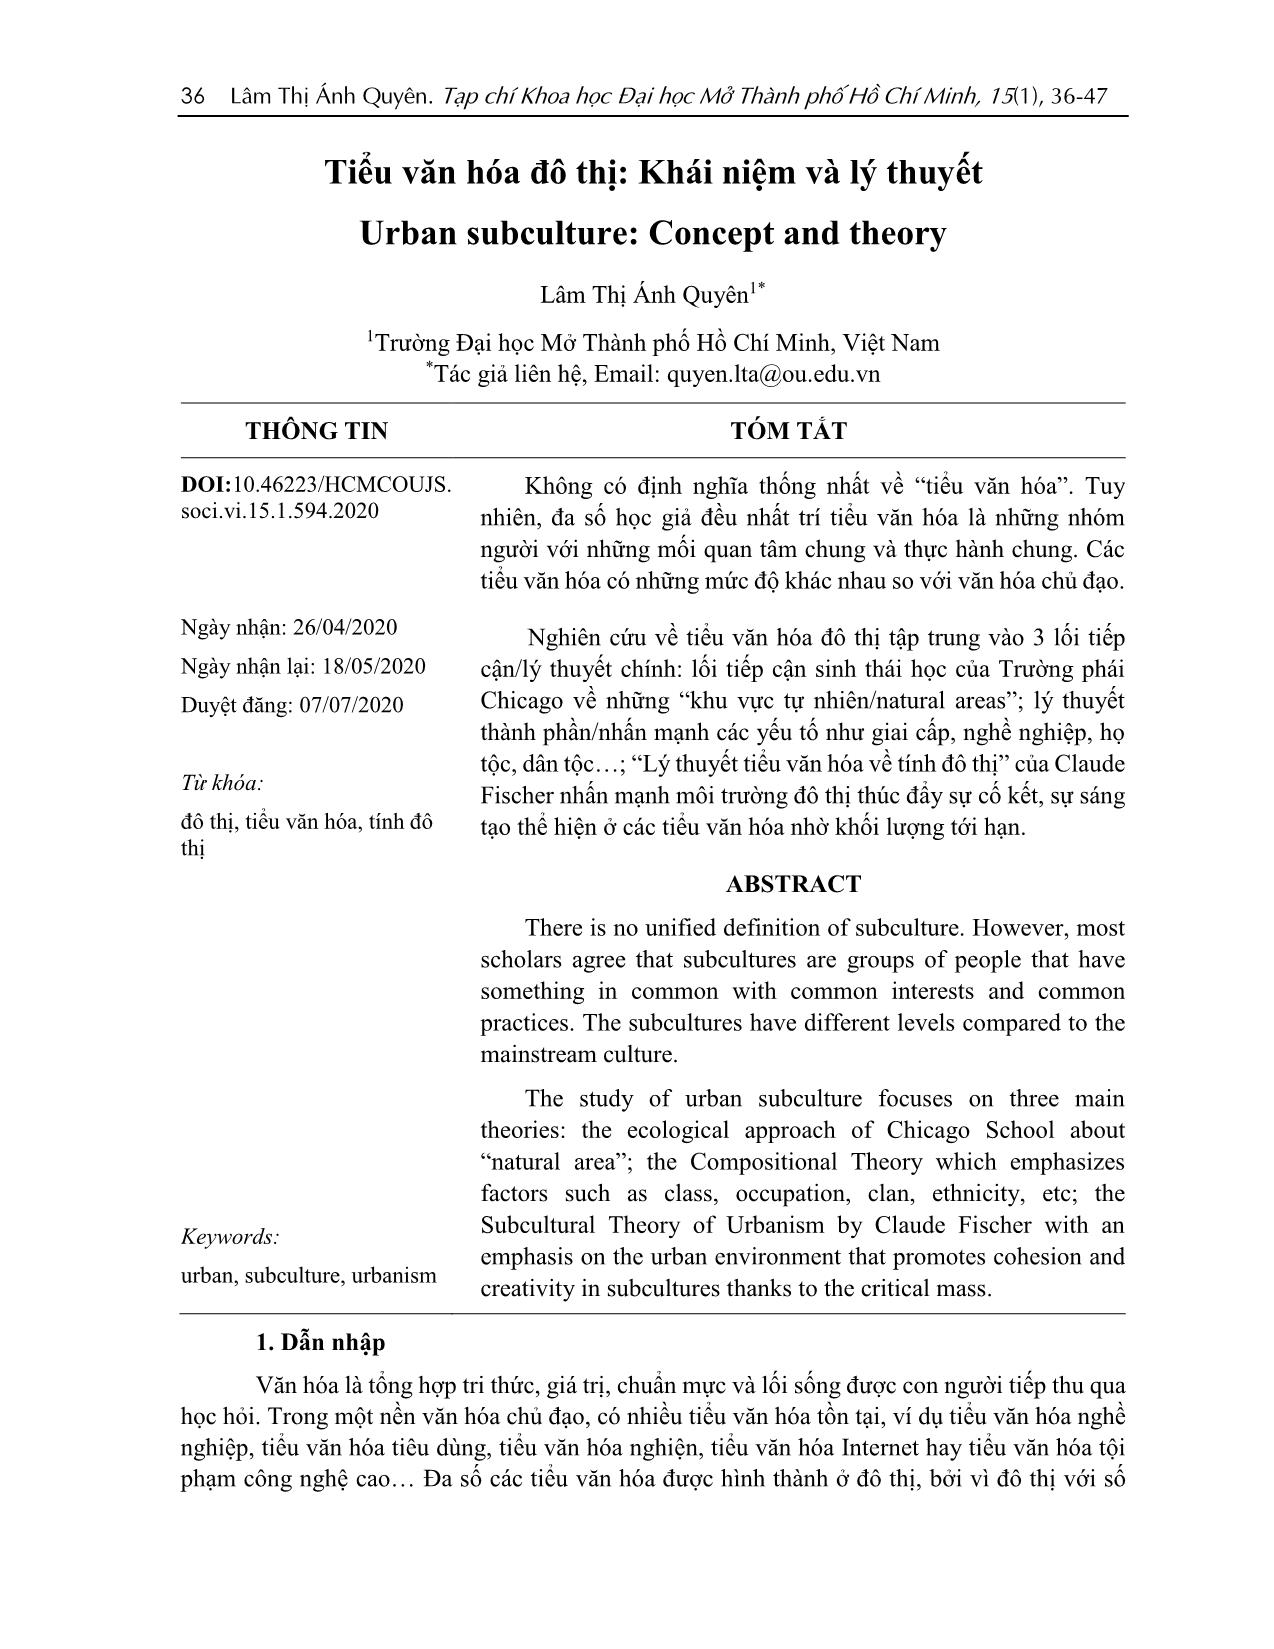 Tiểu văn hóa đô thị: Khái niệm và lý thuyết trang 1